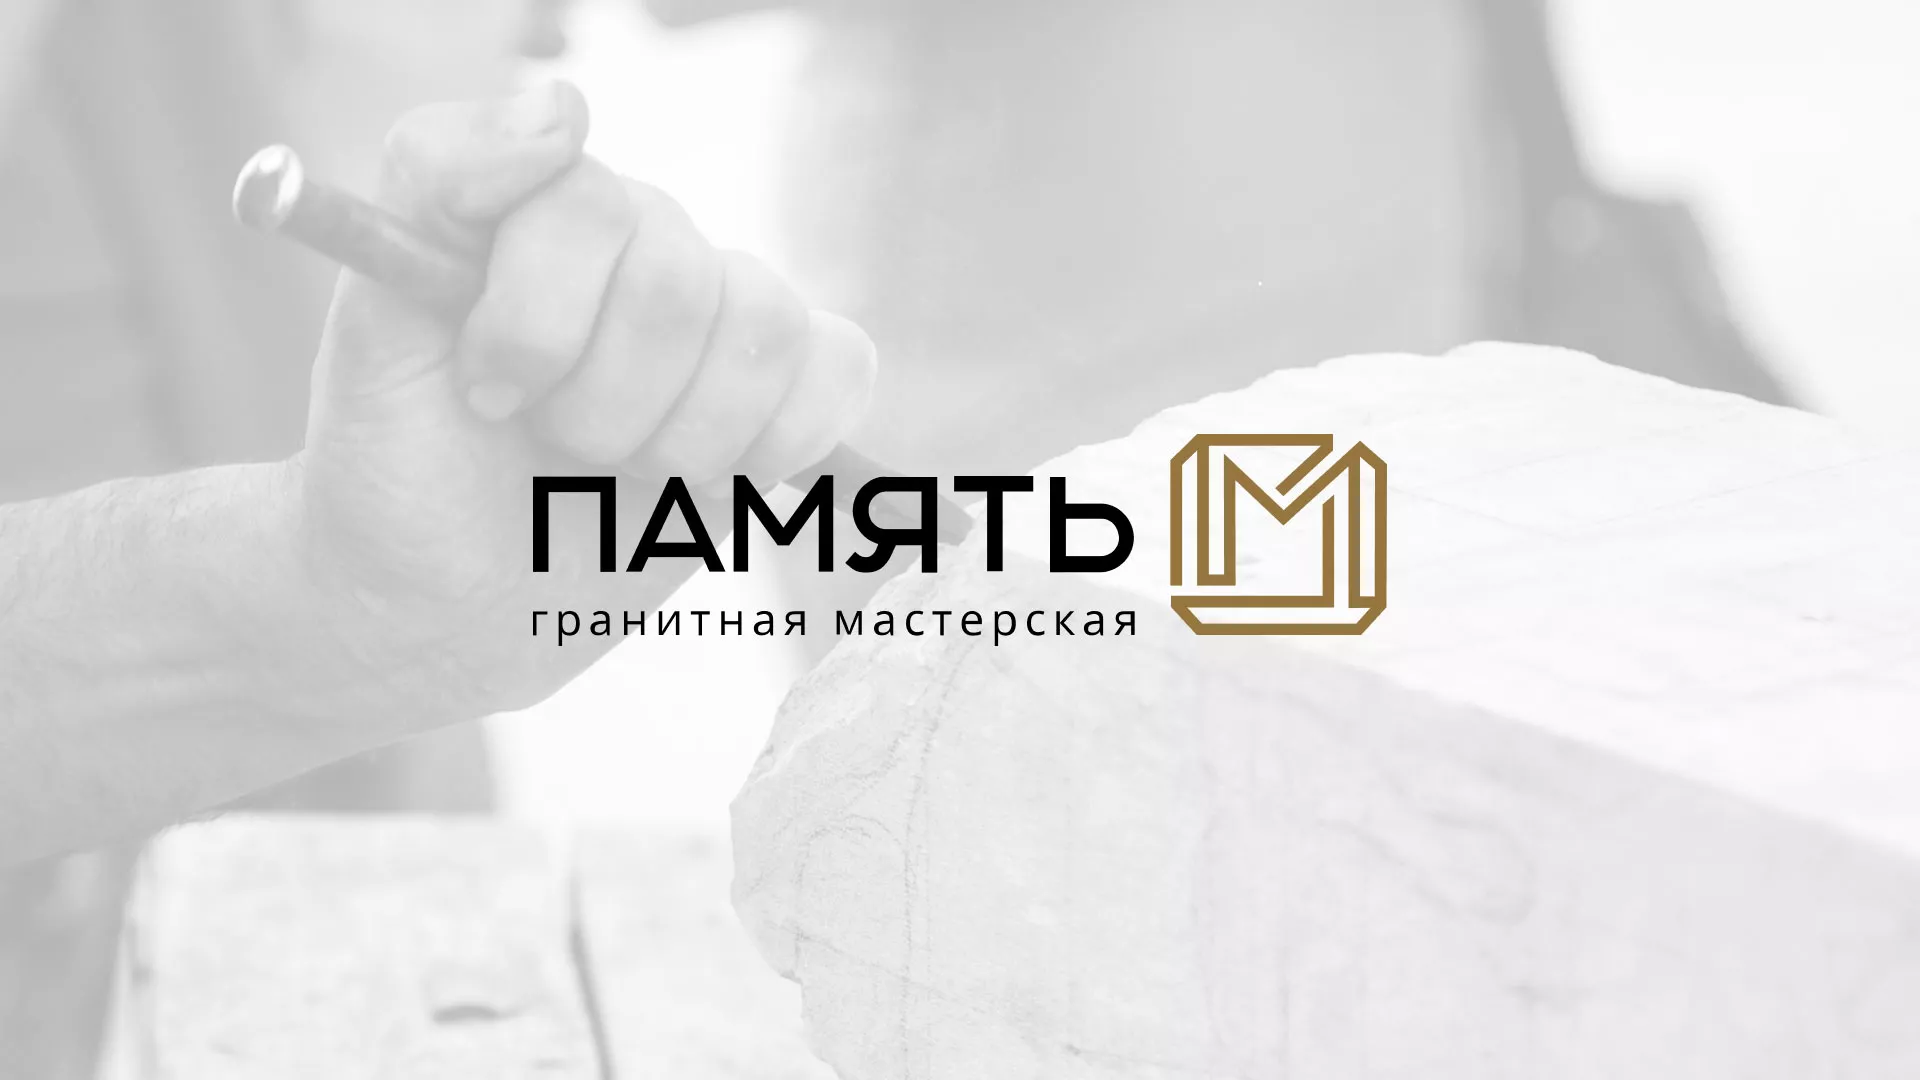 Разработка логотипа и сайта компании «Память-М» в Брянске